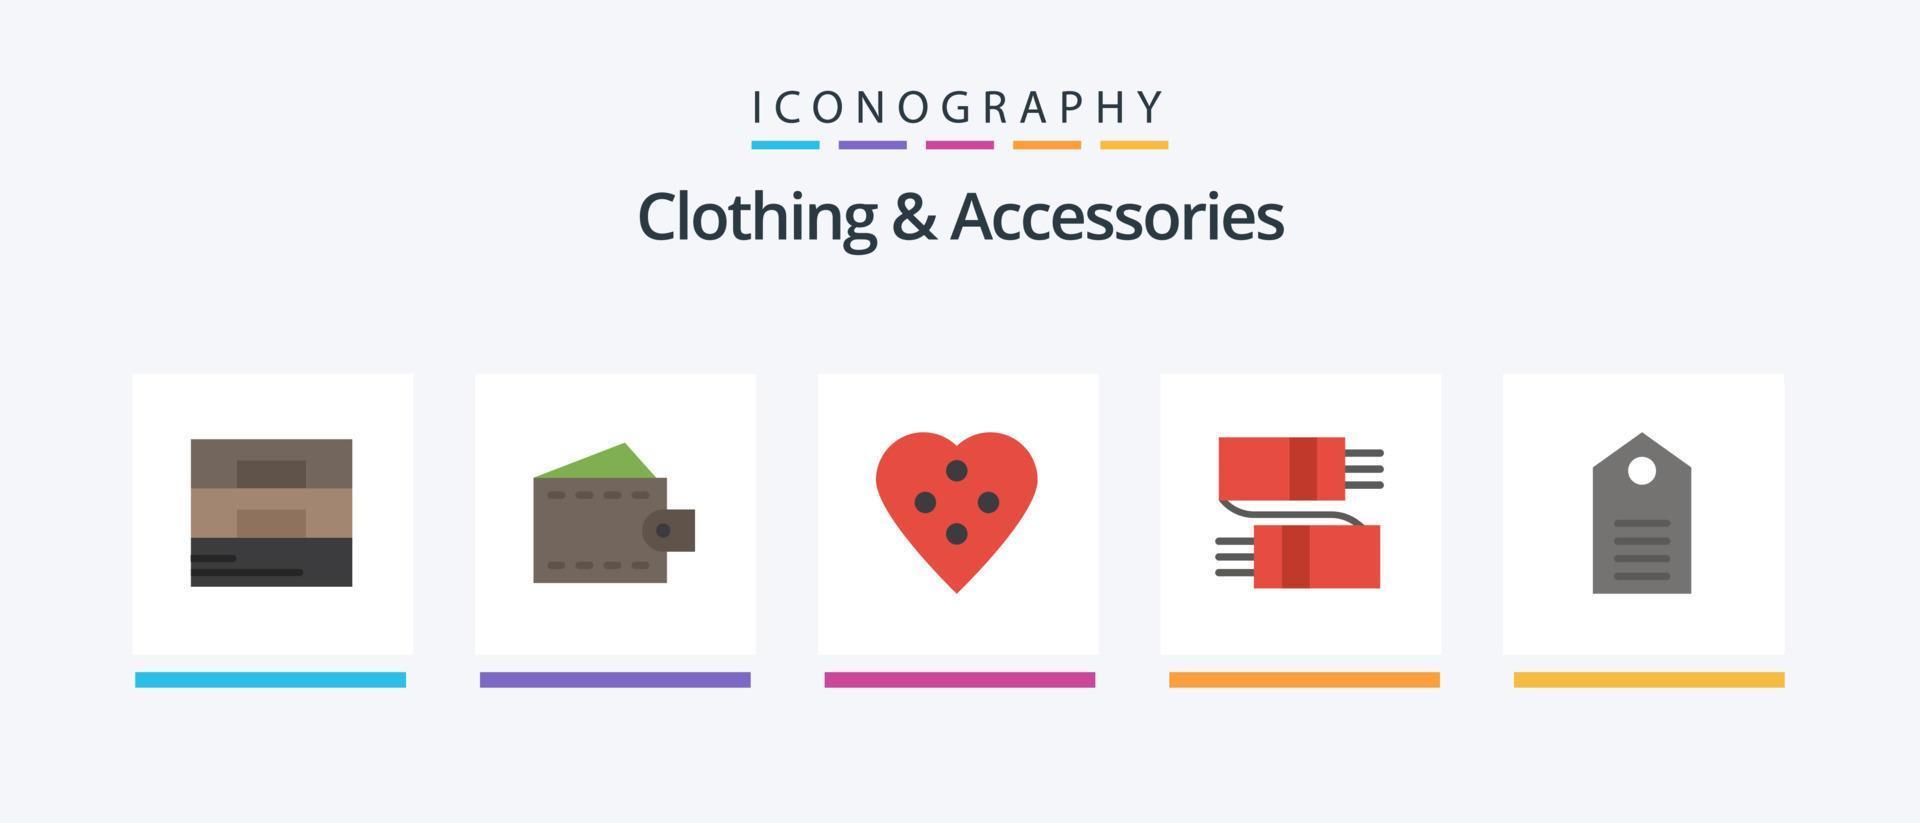 roupas e acessórios flat 5 icon pack incluindo desgaste. desconto. acessórios de costura. roupas. lenço. design de ícones criativos vetor